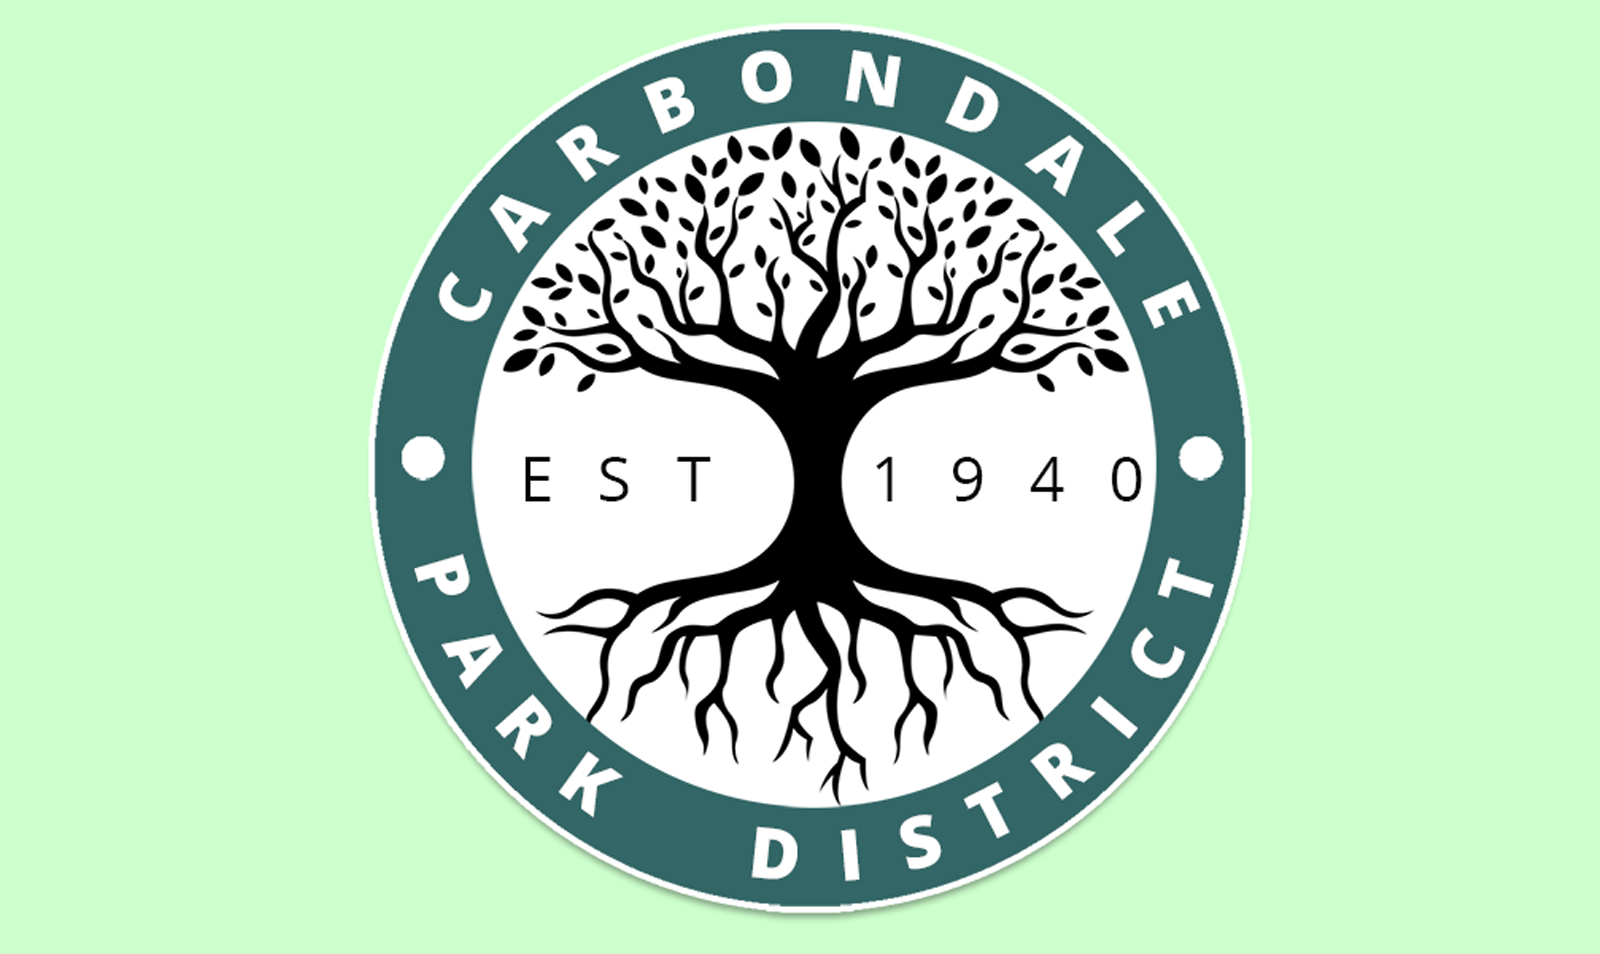 carbondale park district